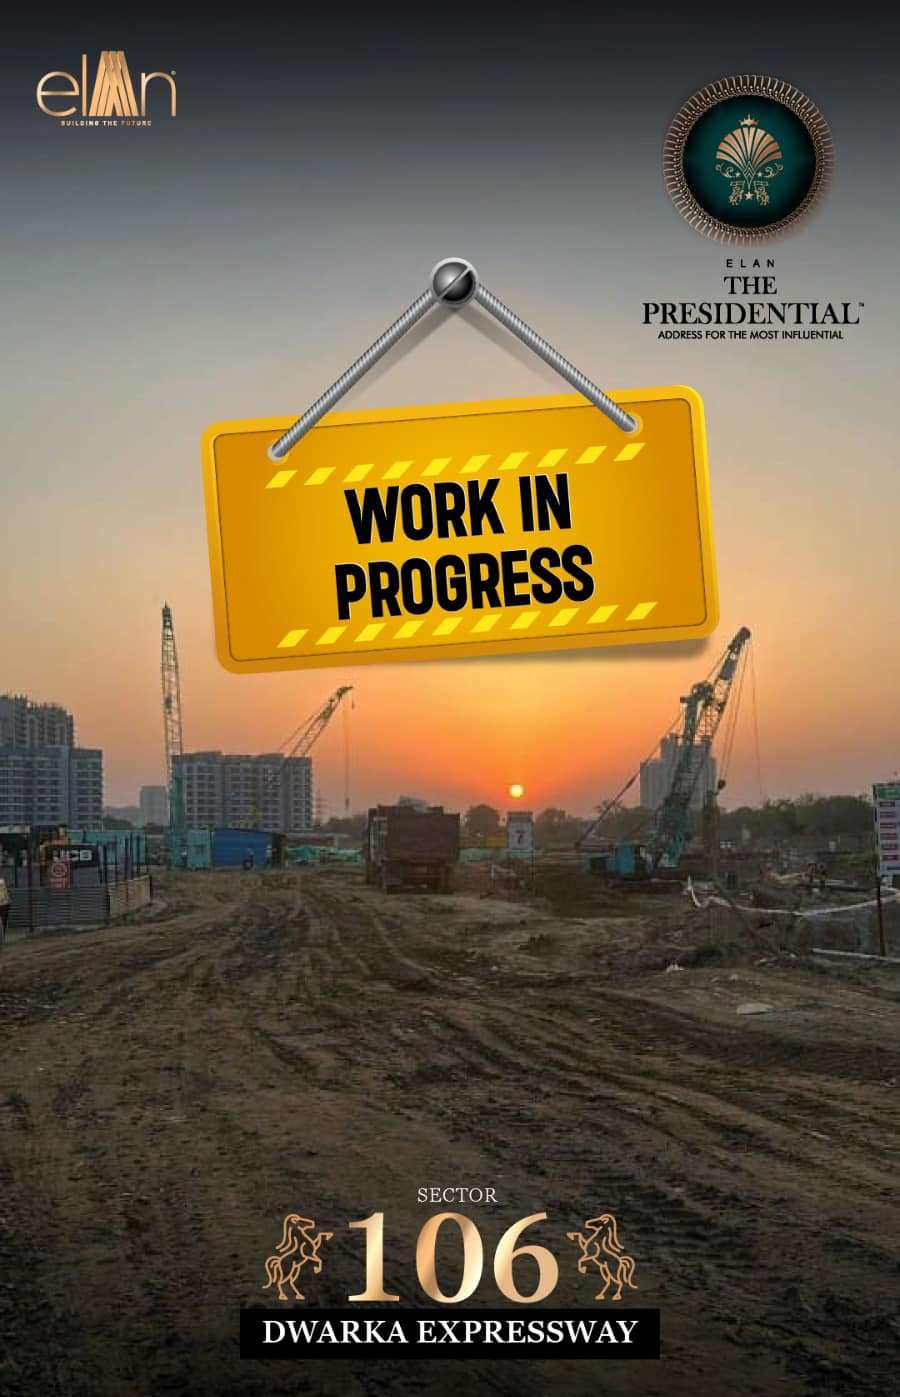 Work in progress at Elan The Presidential in Dwarka Expressway, Gurgaon